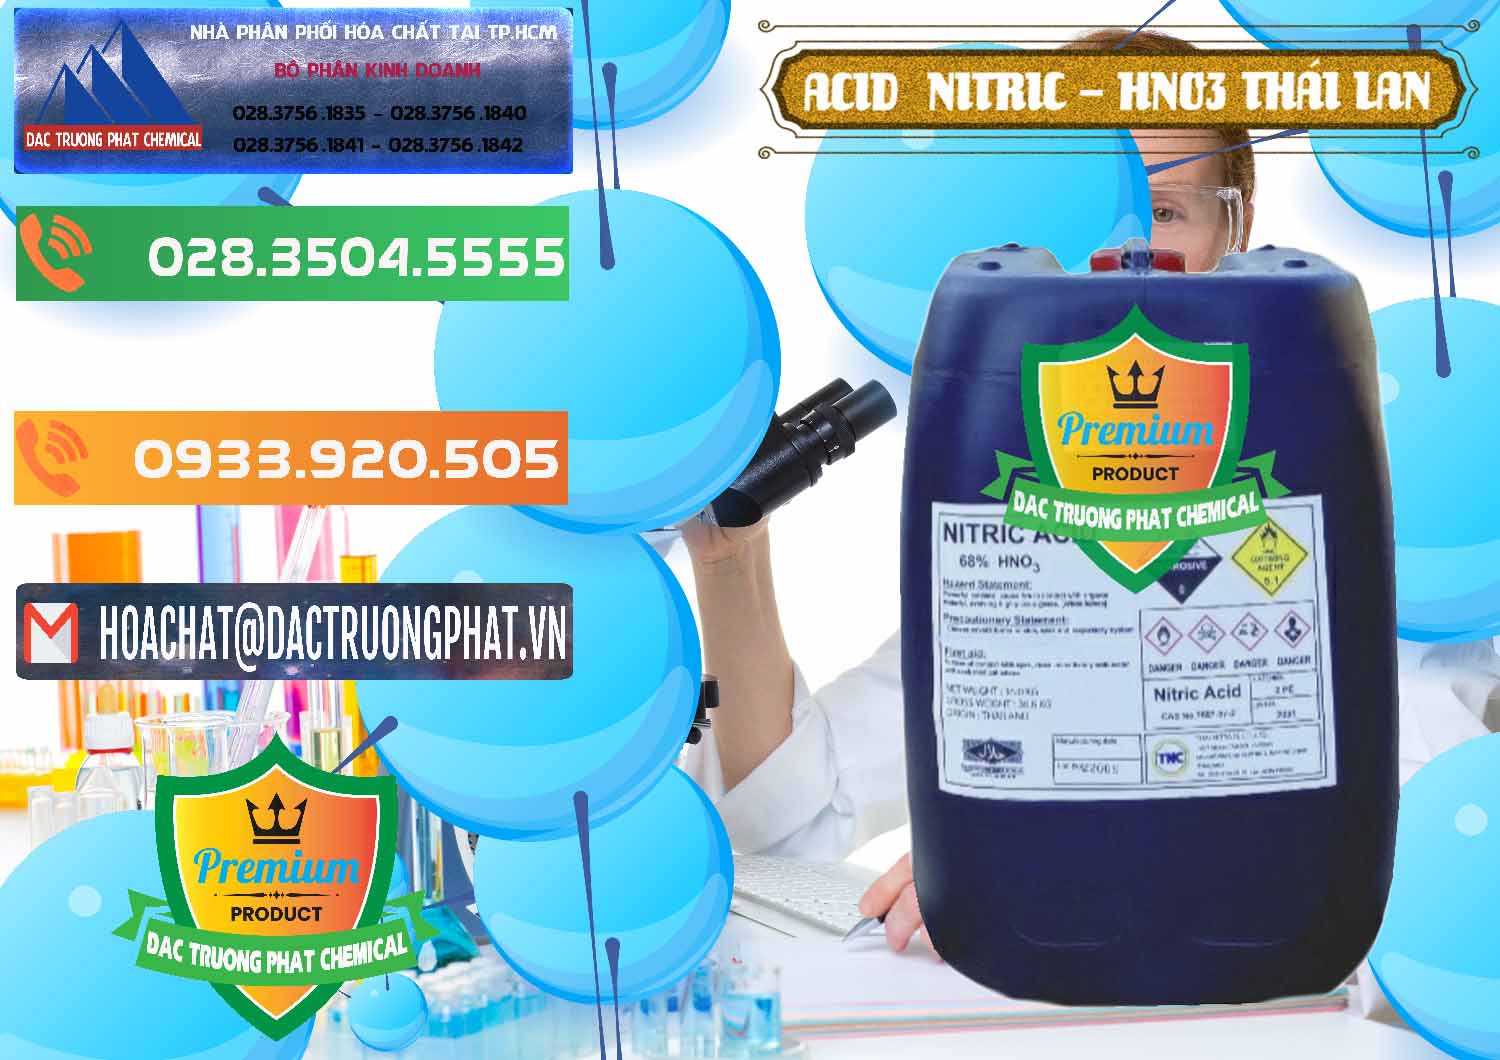 Chuyên kinh doanh _ bán Acid Nitric – Axit Nitric HNO3 Thái Lan Thailand - 0344 - Nhà cung ứng ( phân phối ) hóa chất tại TP.HCM - hoachatxulynuoc.com.vn